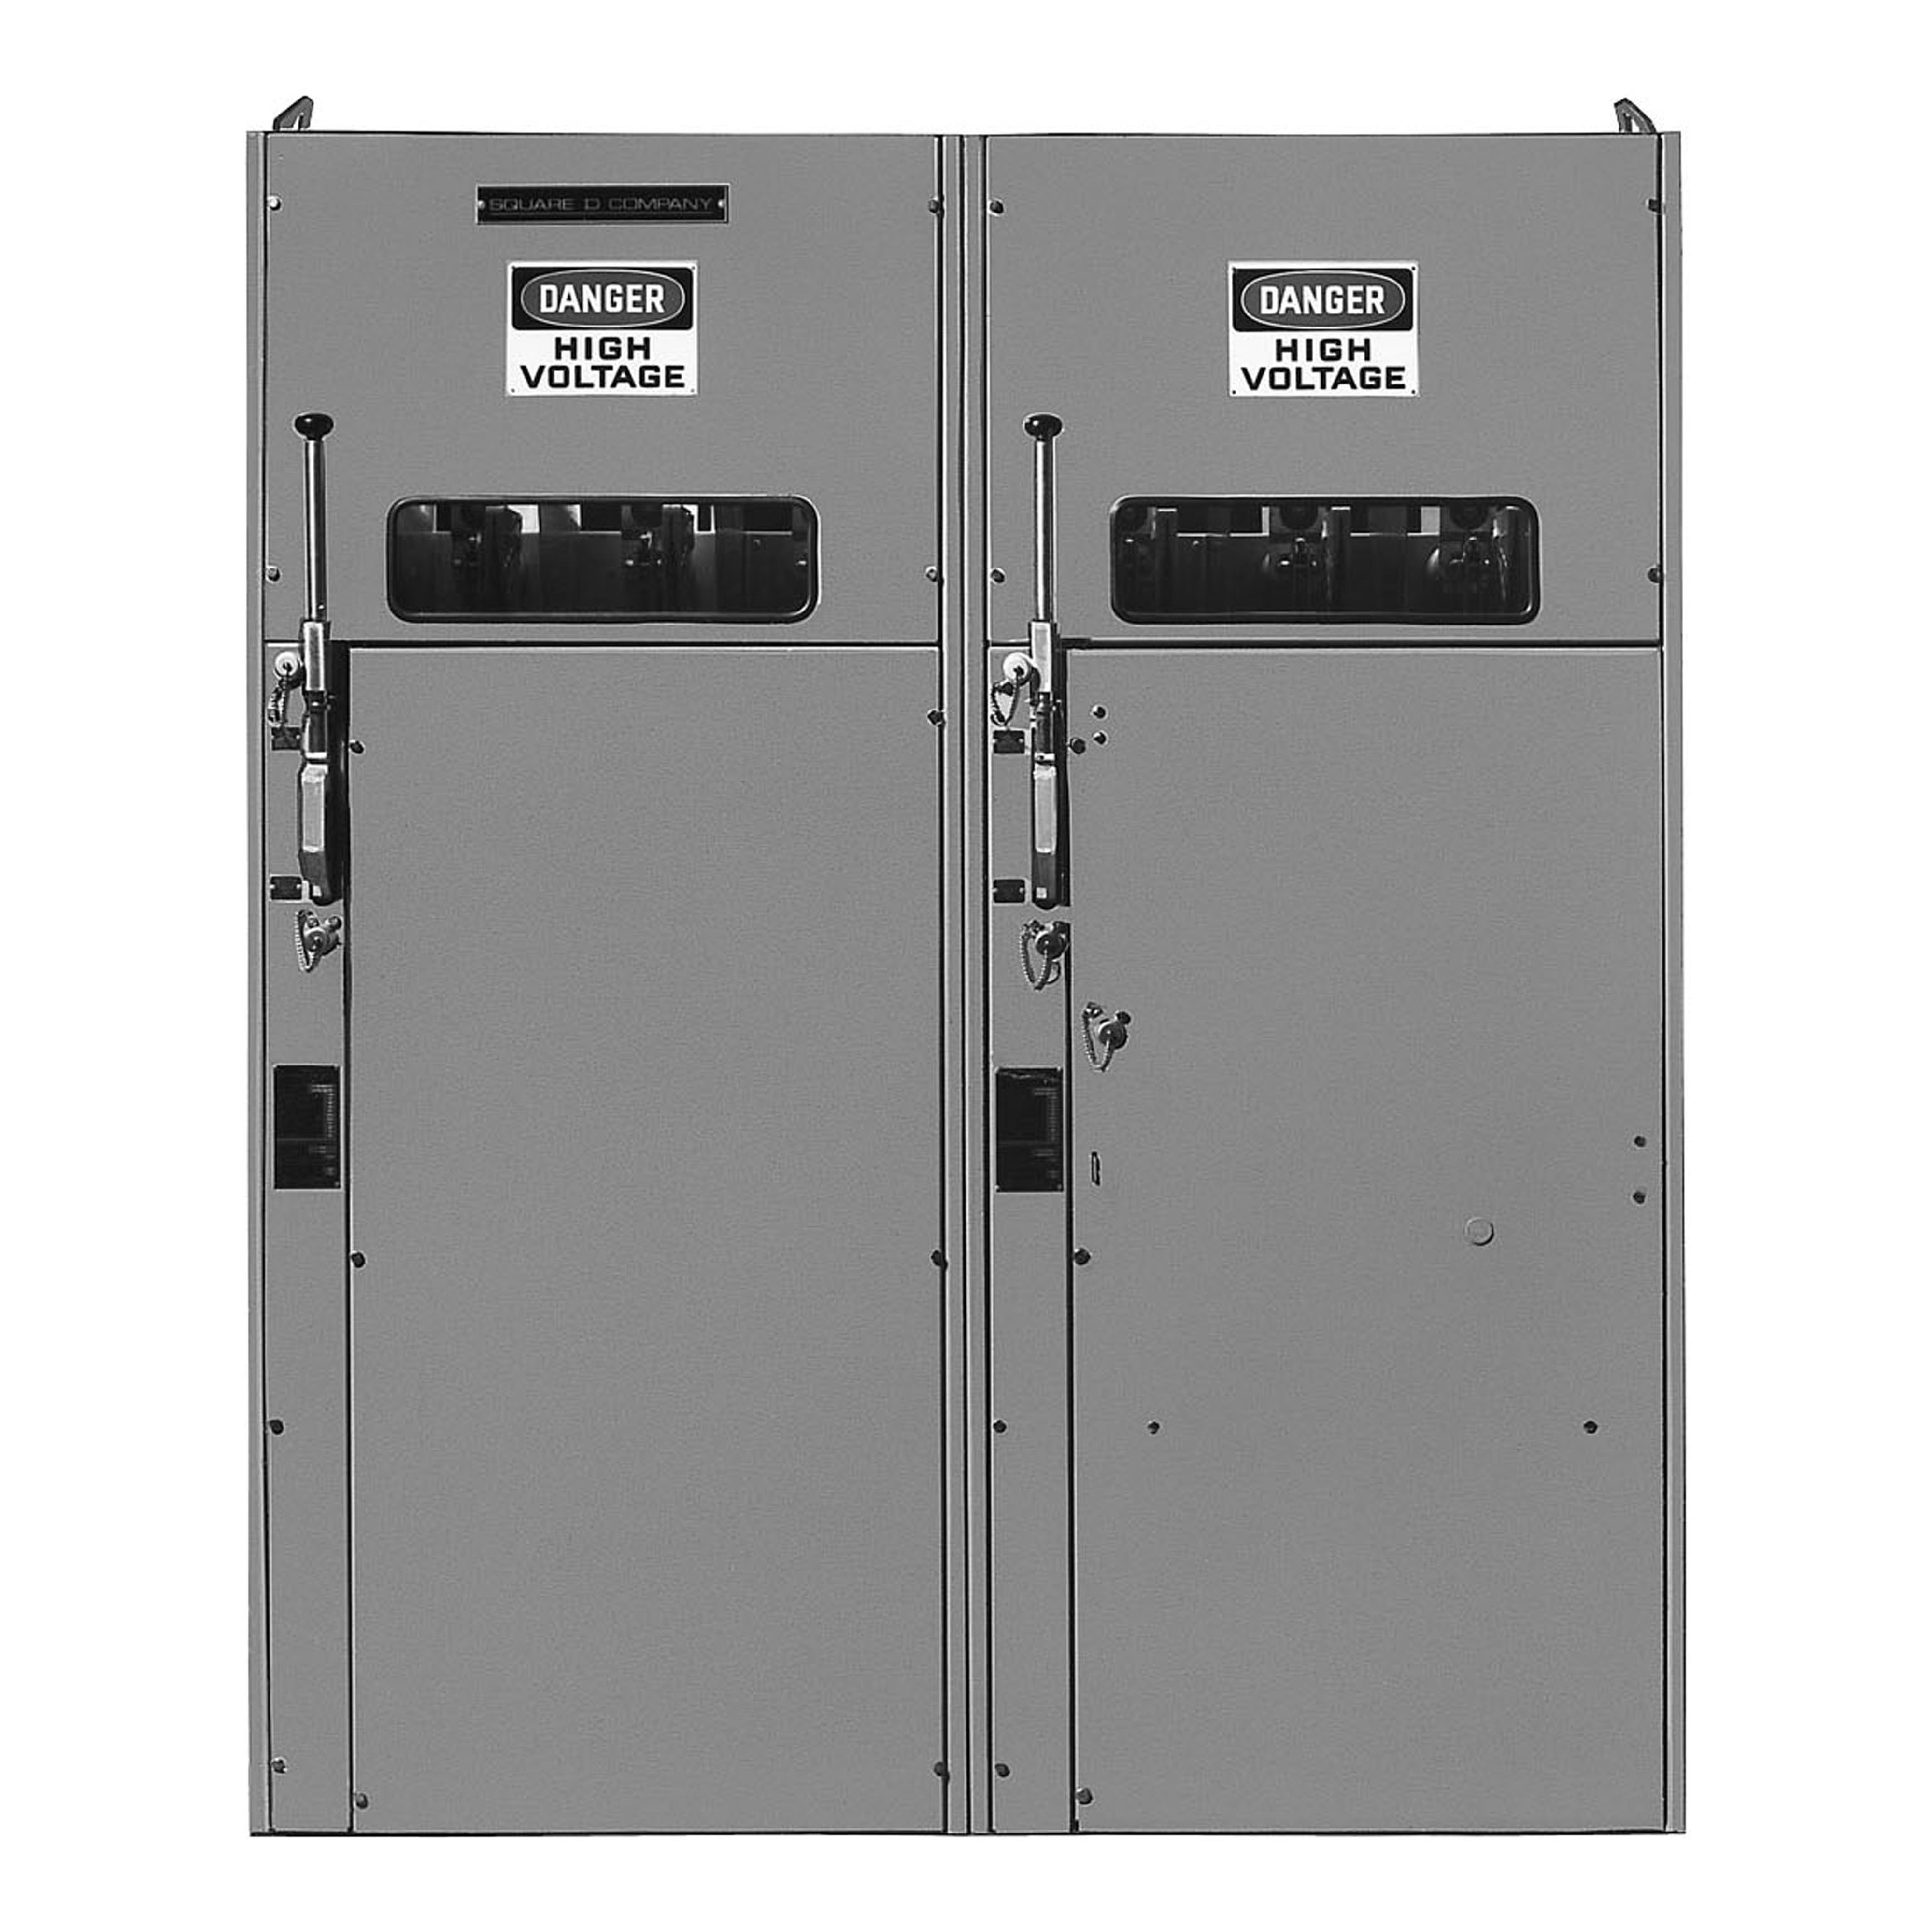 Switchgear, HVL, duplex, 600A, 4.76kV, 10 to 450E current limit fuse, transformer disconnect, left, NEMA 1